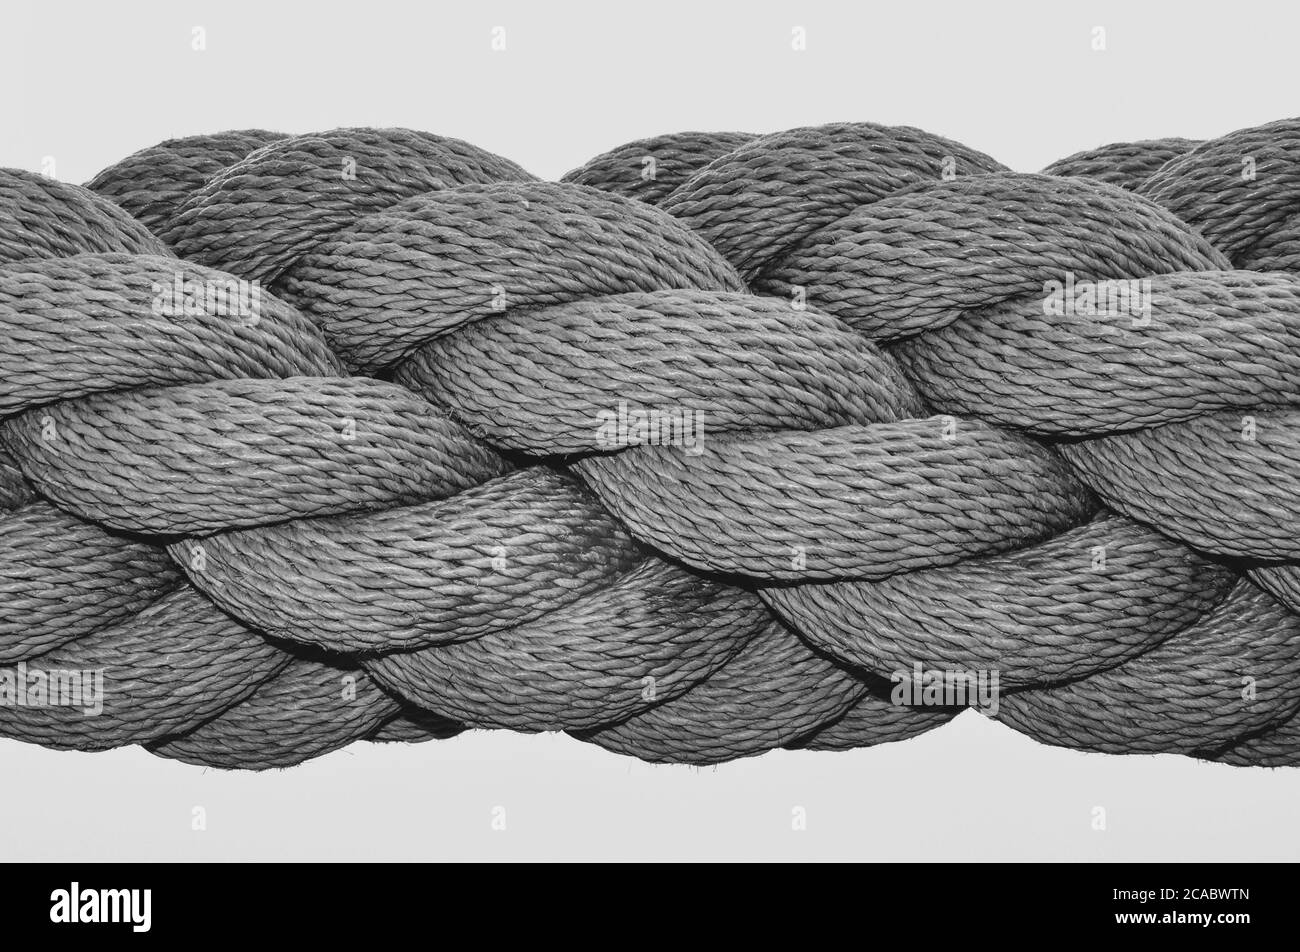 Immagine ravvicinata in bianco e nero di una spessa fune industriale, con molte lunghezze di fune avvolte insieme a spirale. Foto Stock